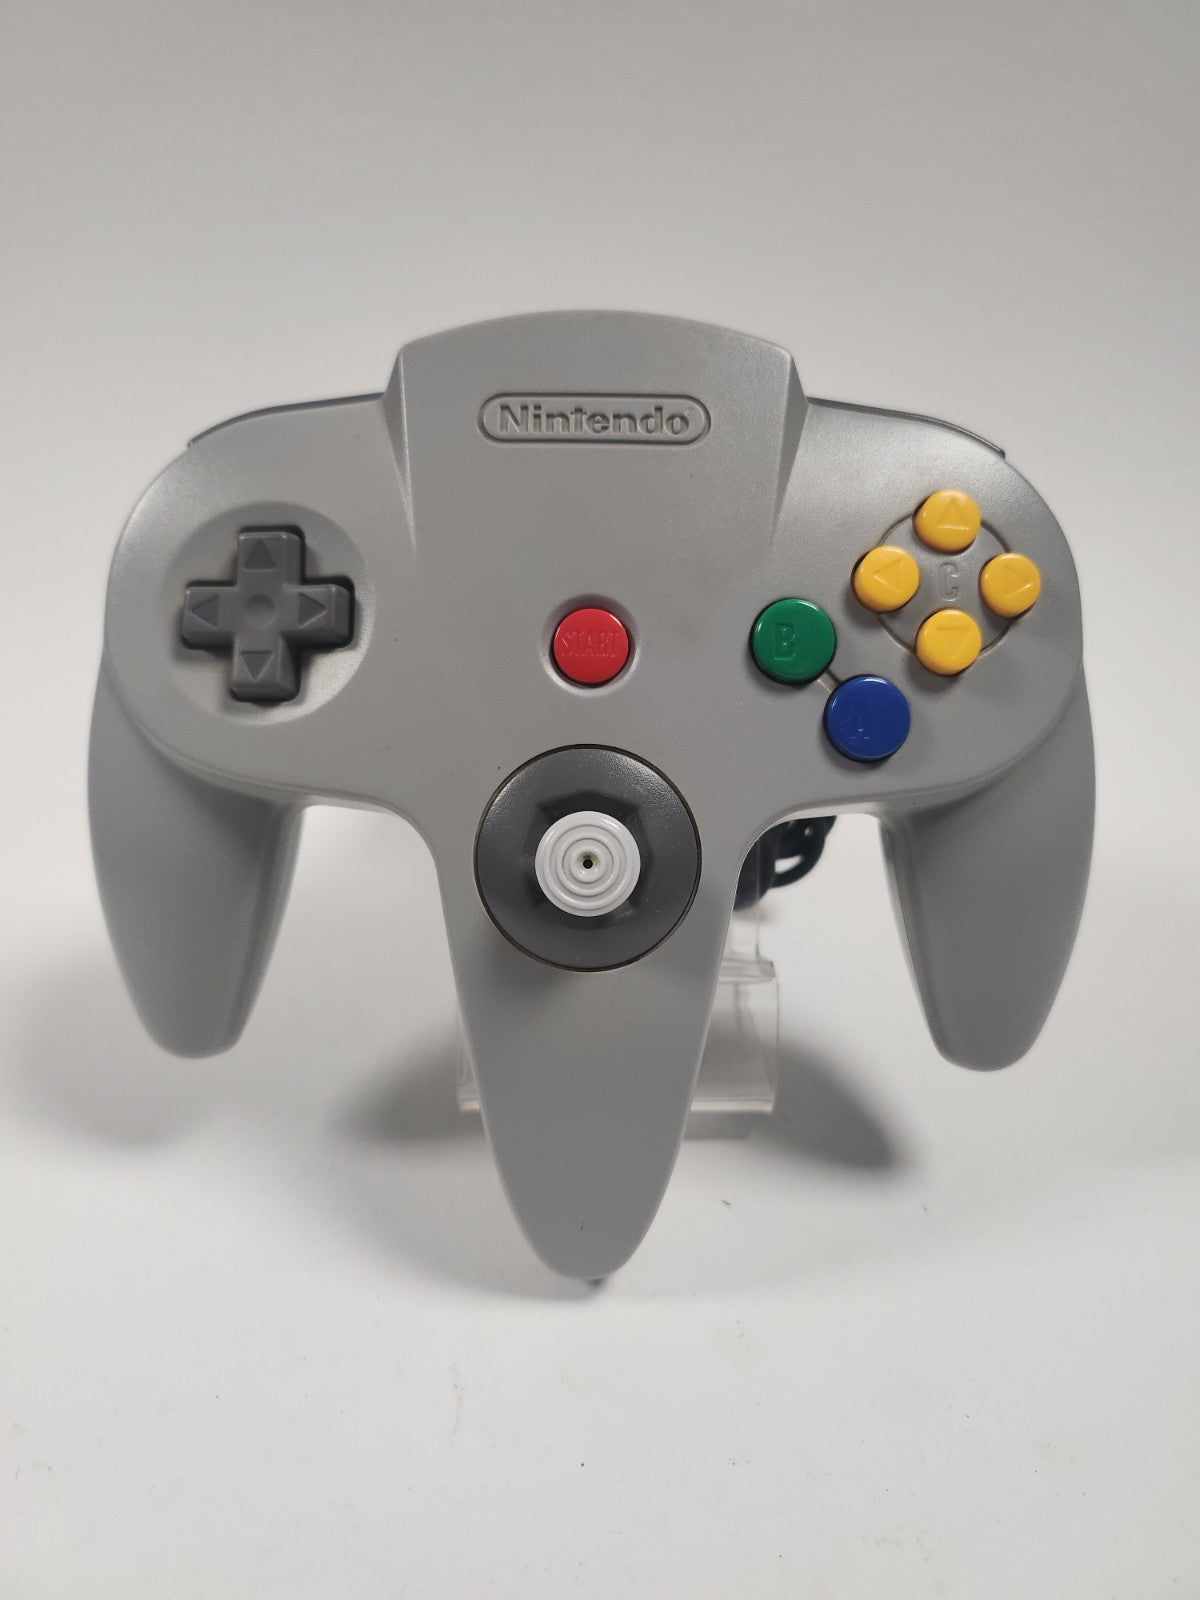 Nintendo 64 met 1 controller en adapter